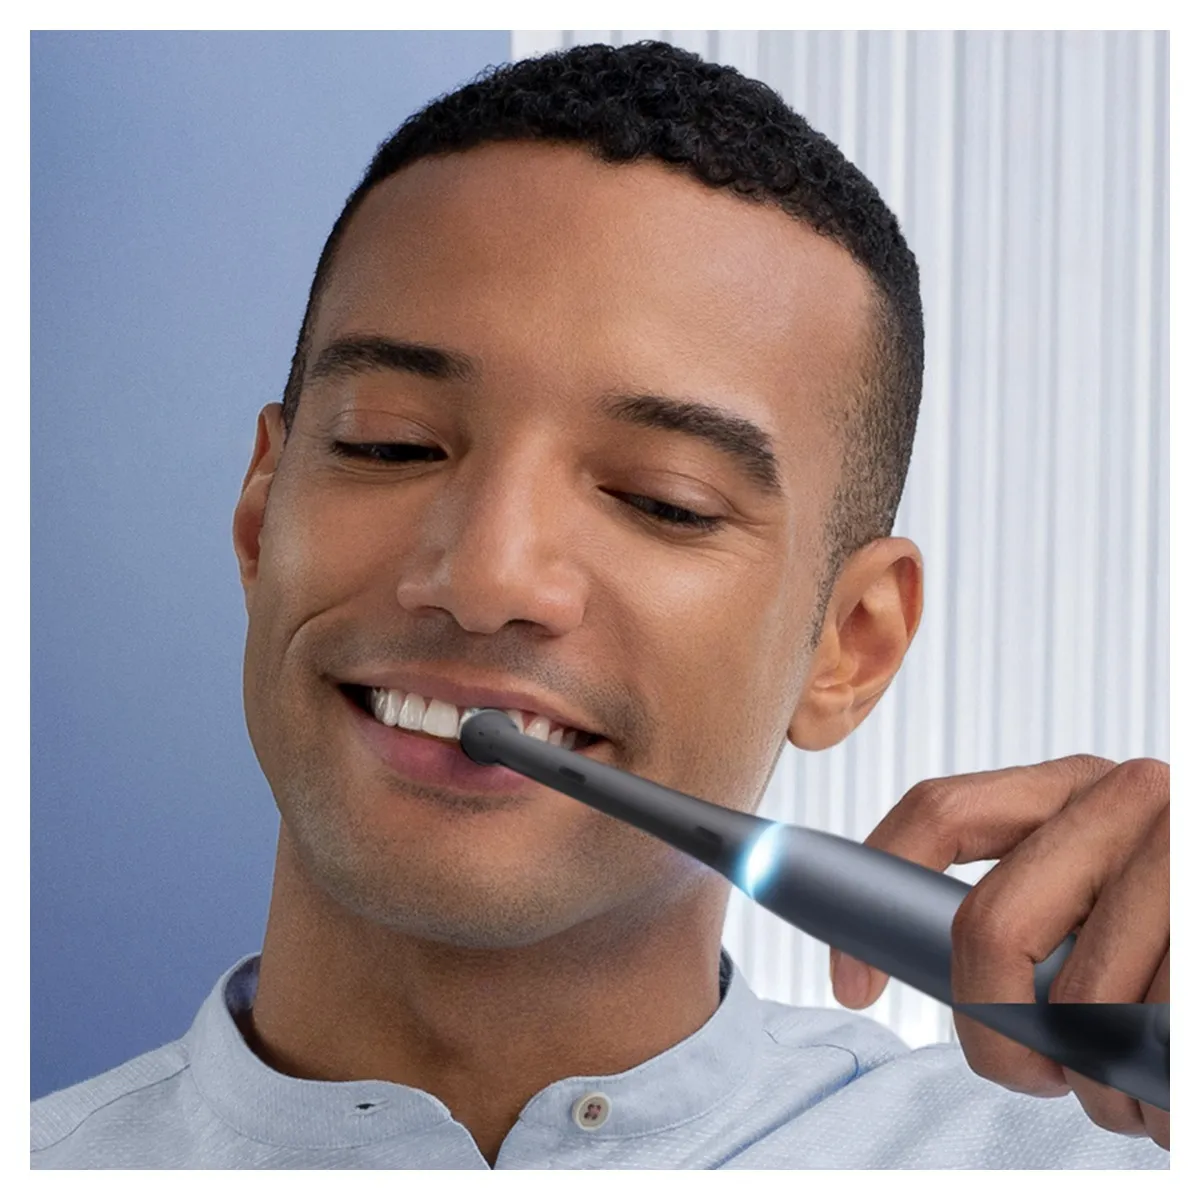 Oral-B iO7 Series Duo Black Onyx Extra Handle elektrický zubní kartáček 2 ks